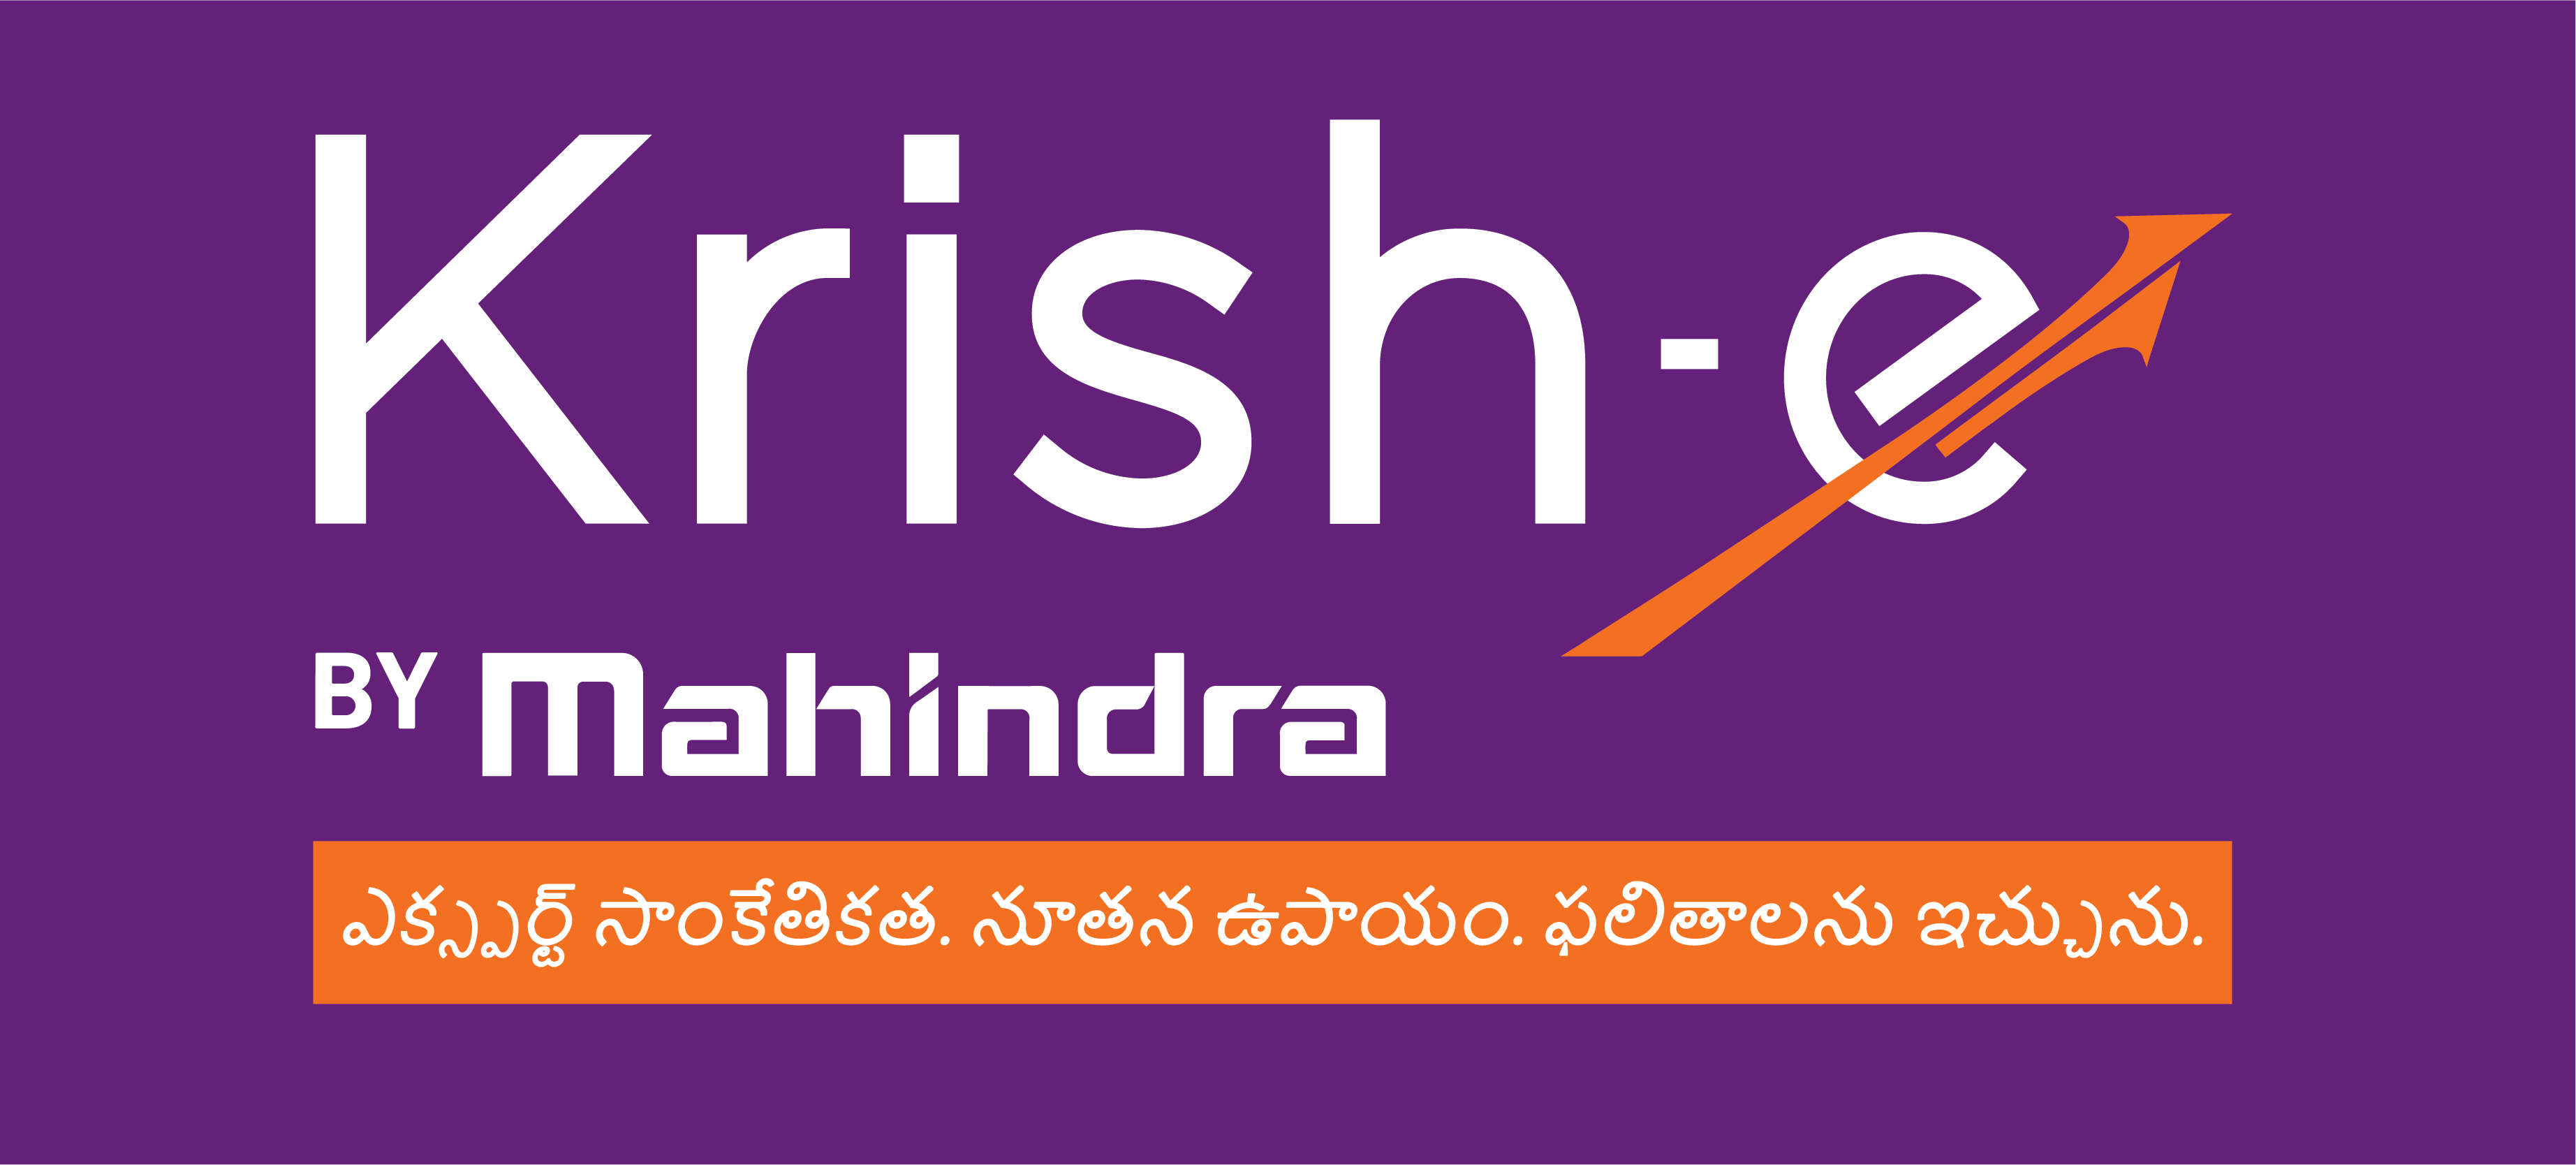 Krishe - Telugu Logo